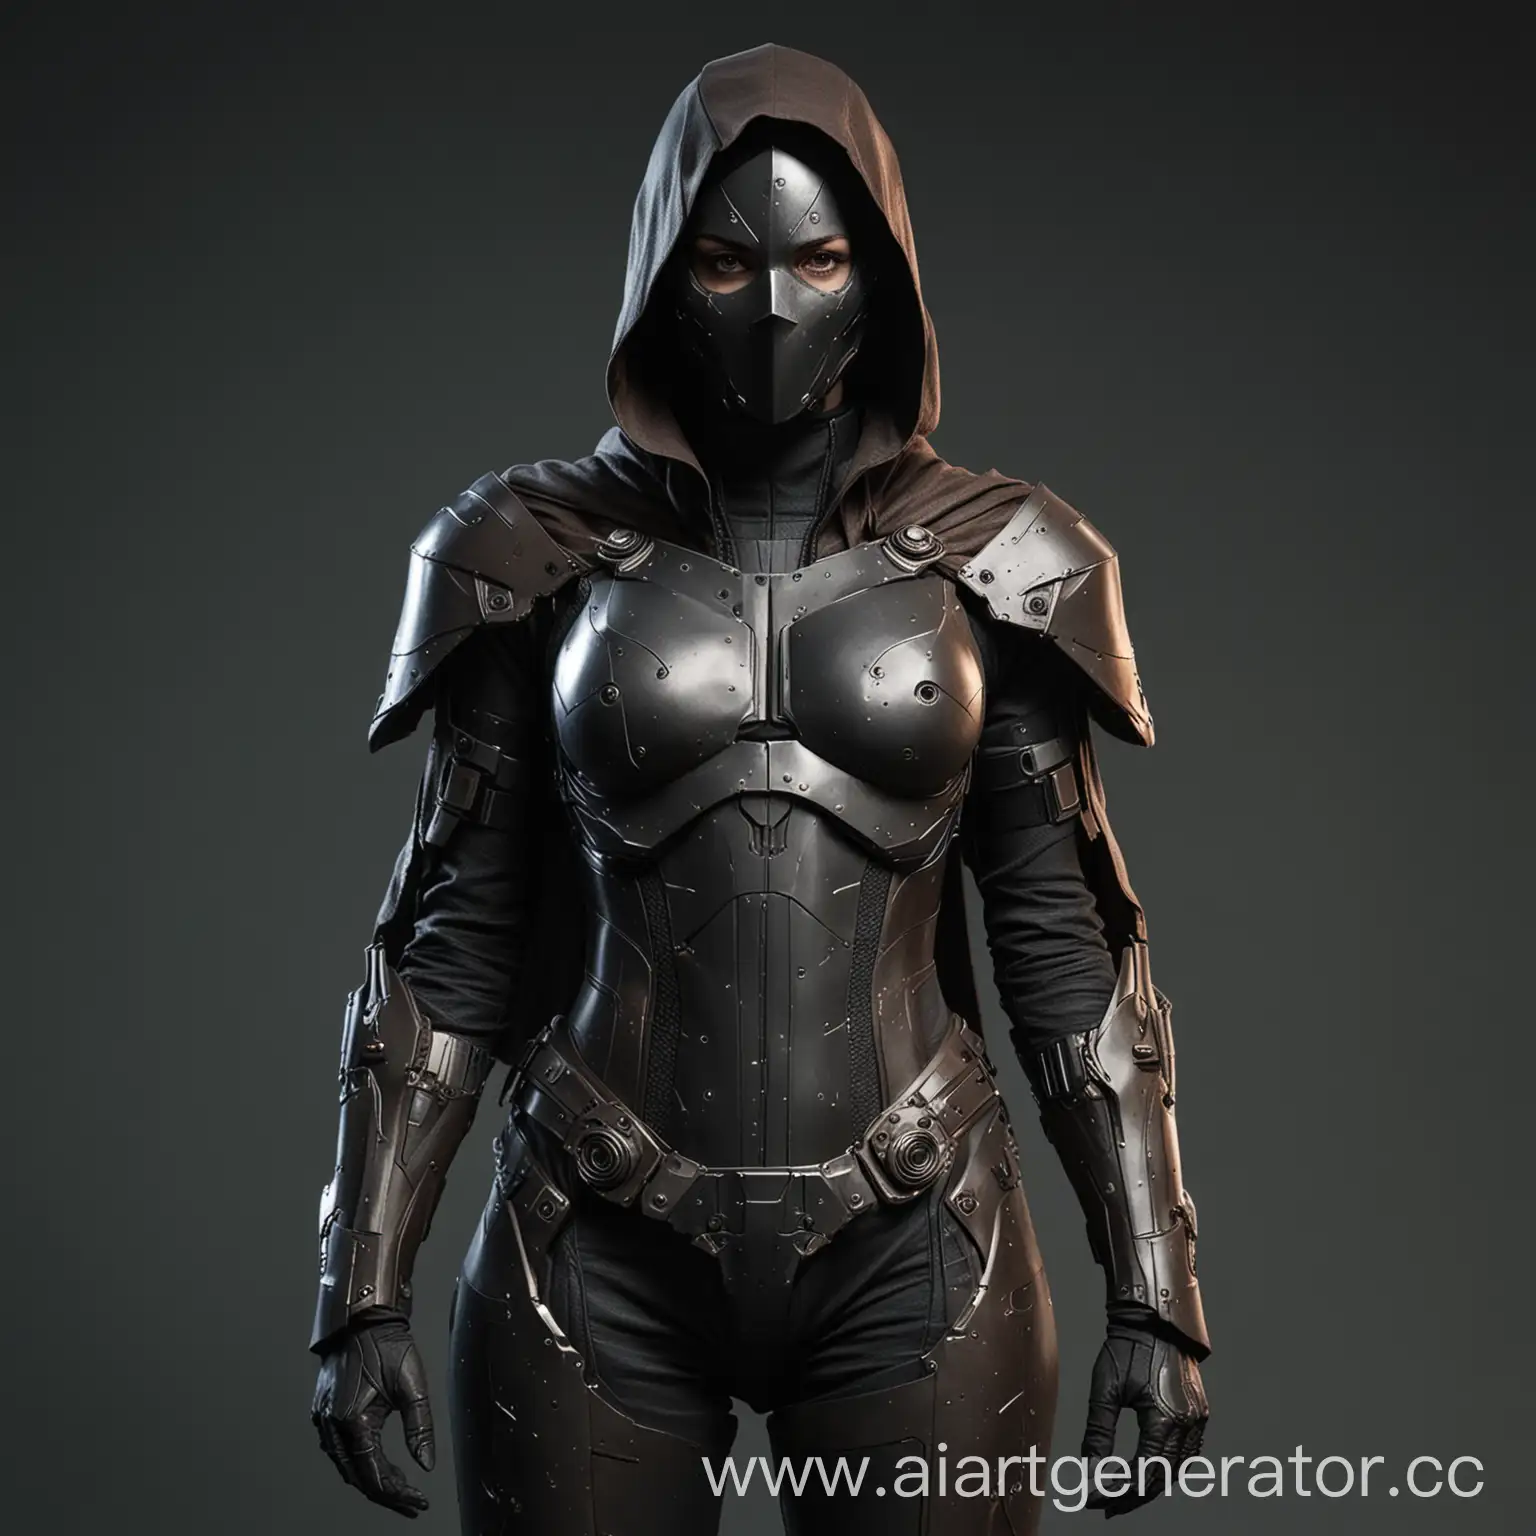 техногенный костюм с элементами брони в тёмной палитре для женщины линчевателя с плащом
лицо не должно быть видно